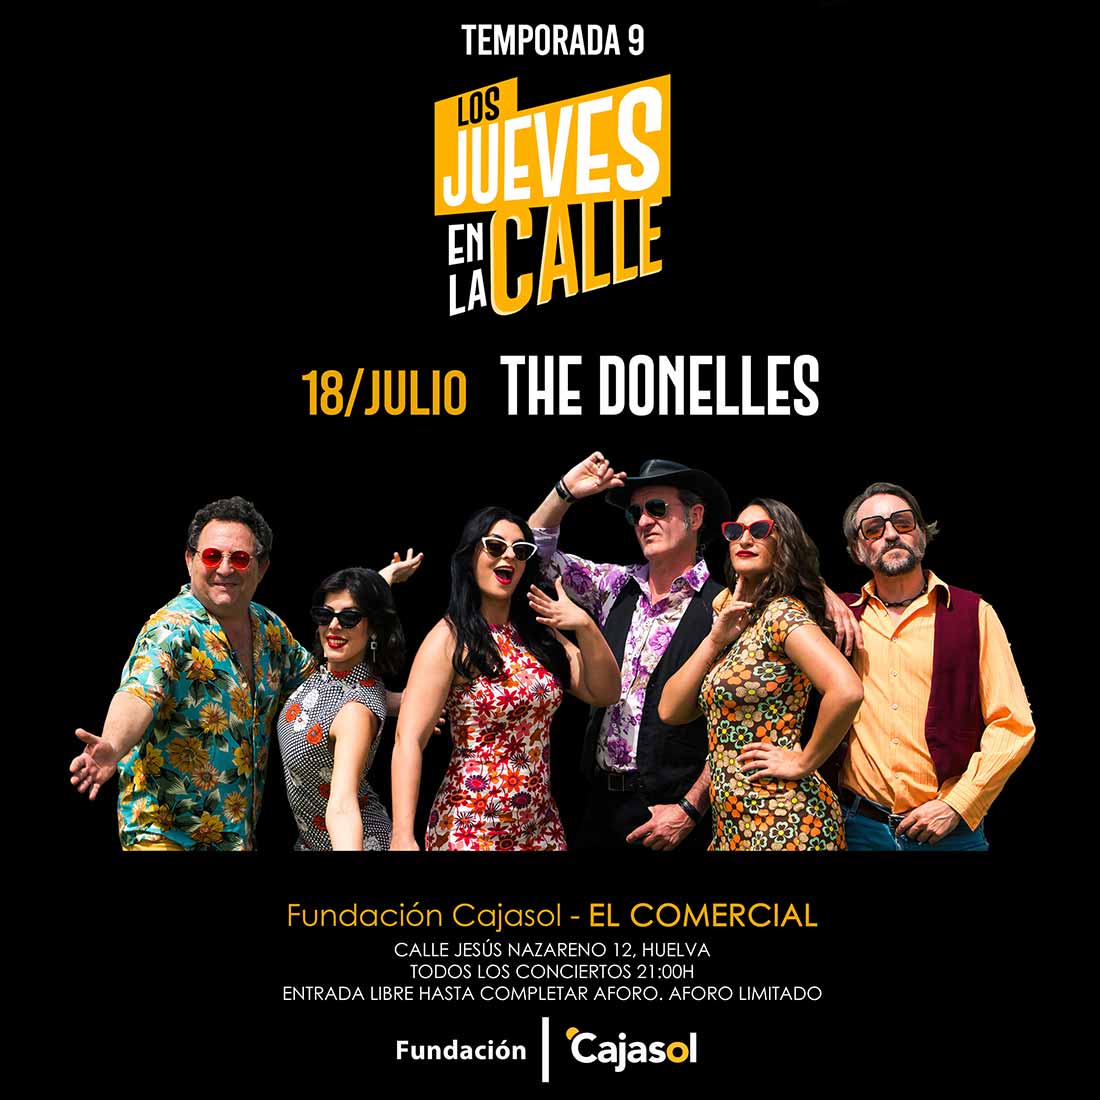 The Donelles 18 de julio en concierto Los jueves en la calle fundacion cajasol 1